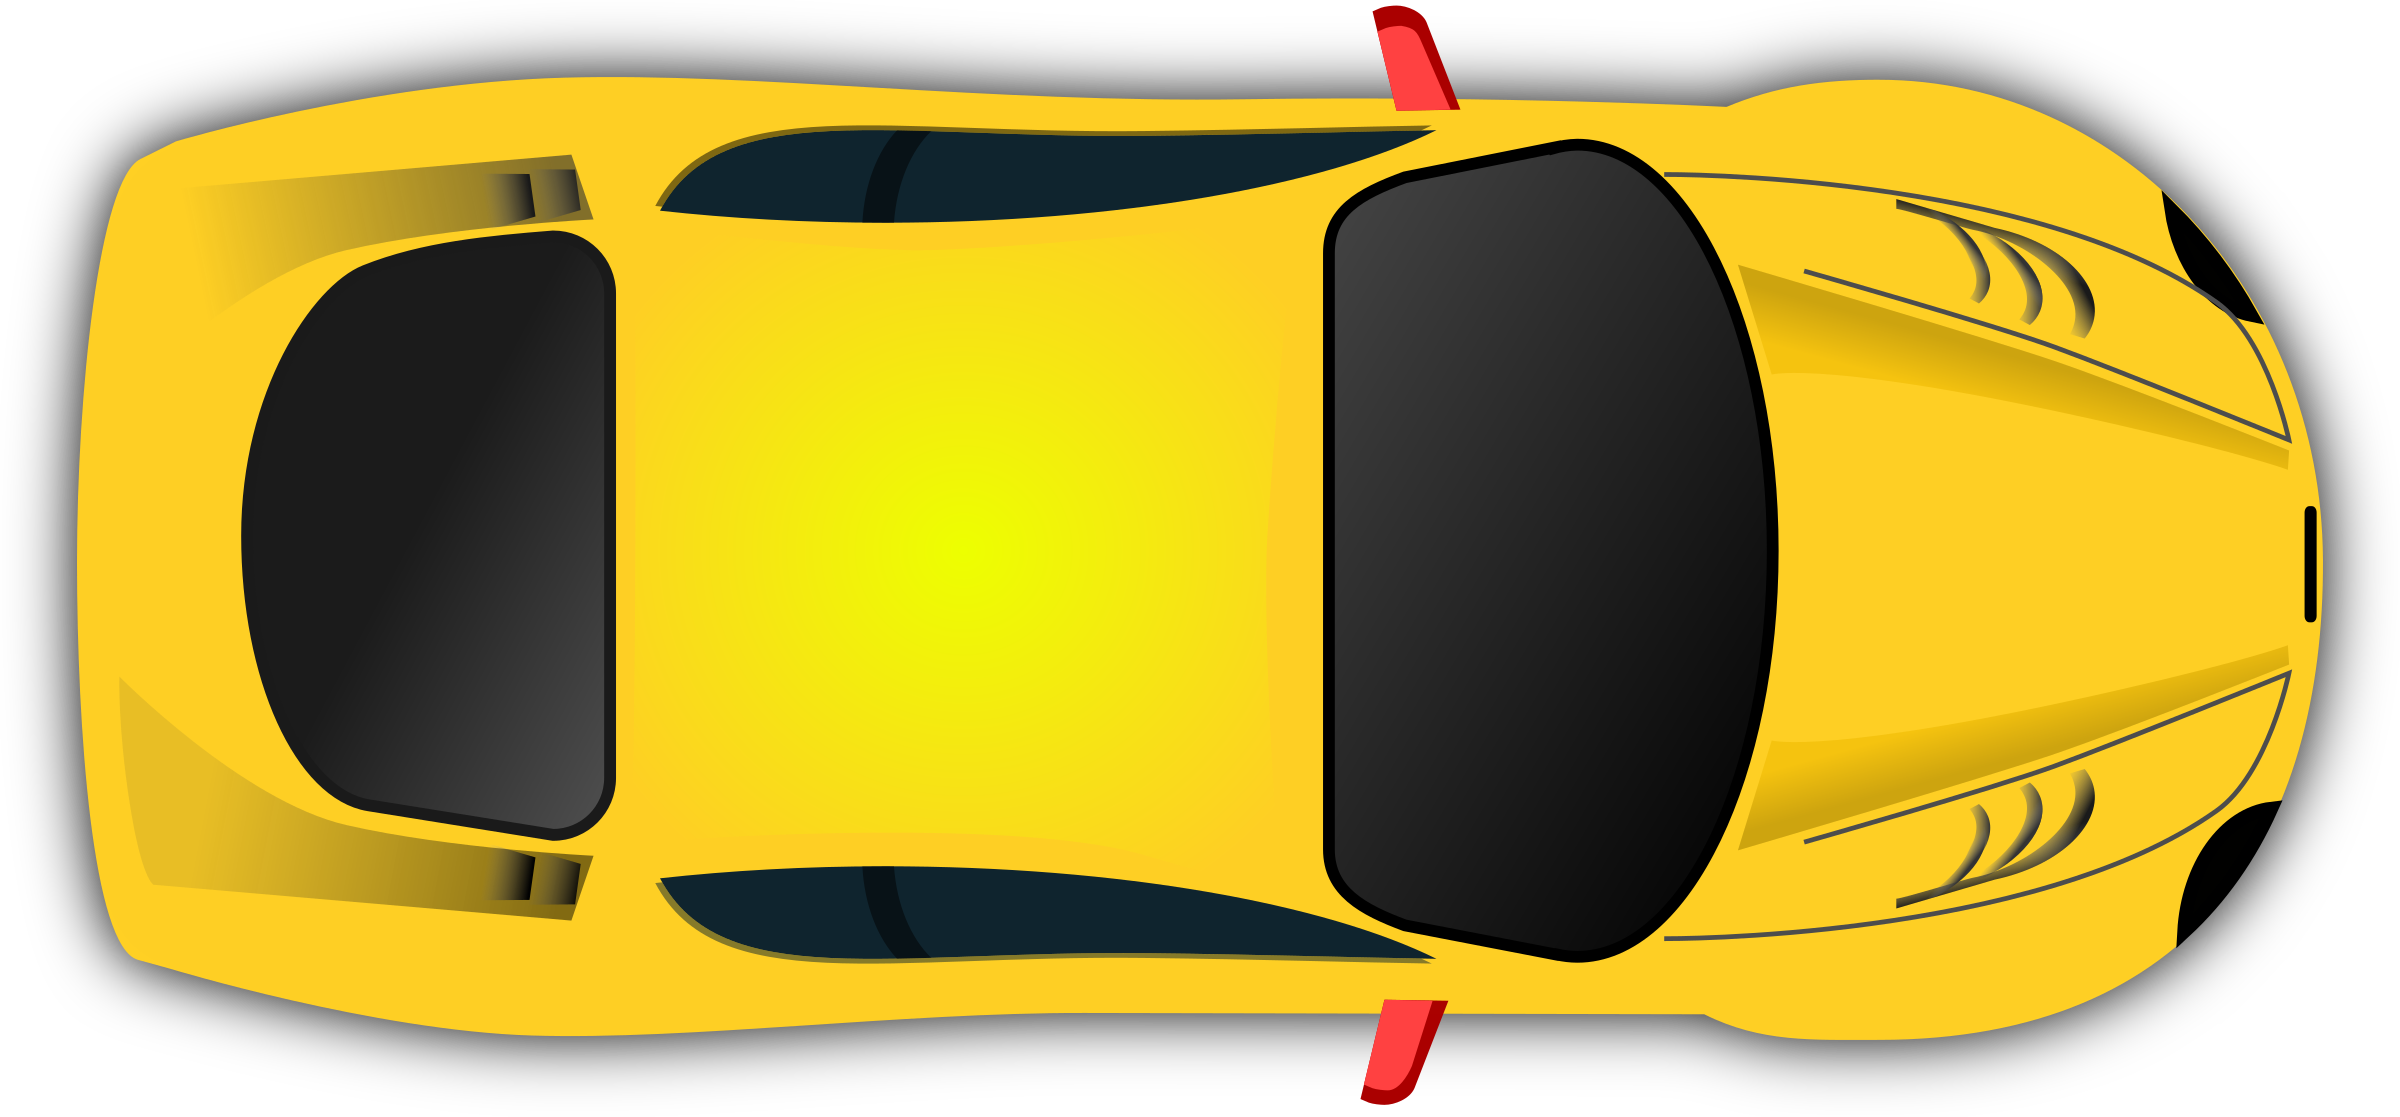 Clipart Car Top view remix racing game 